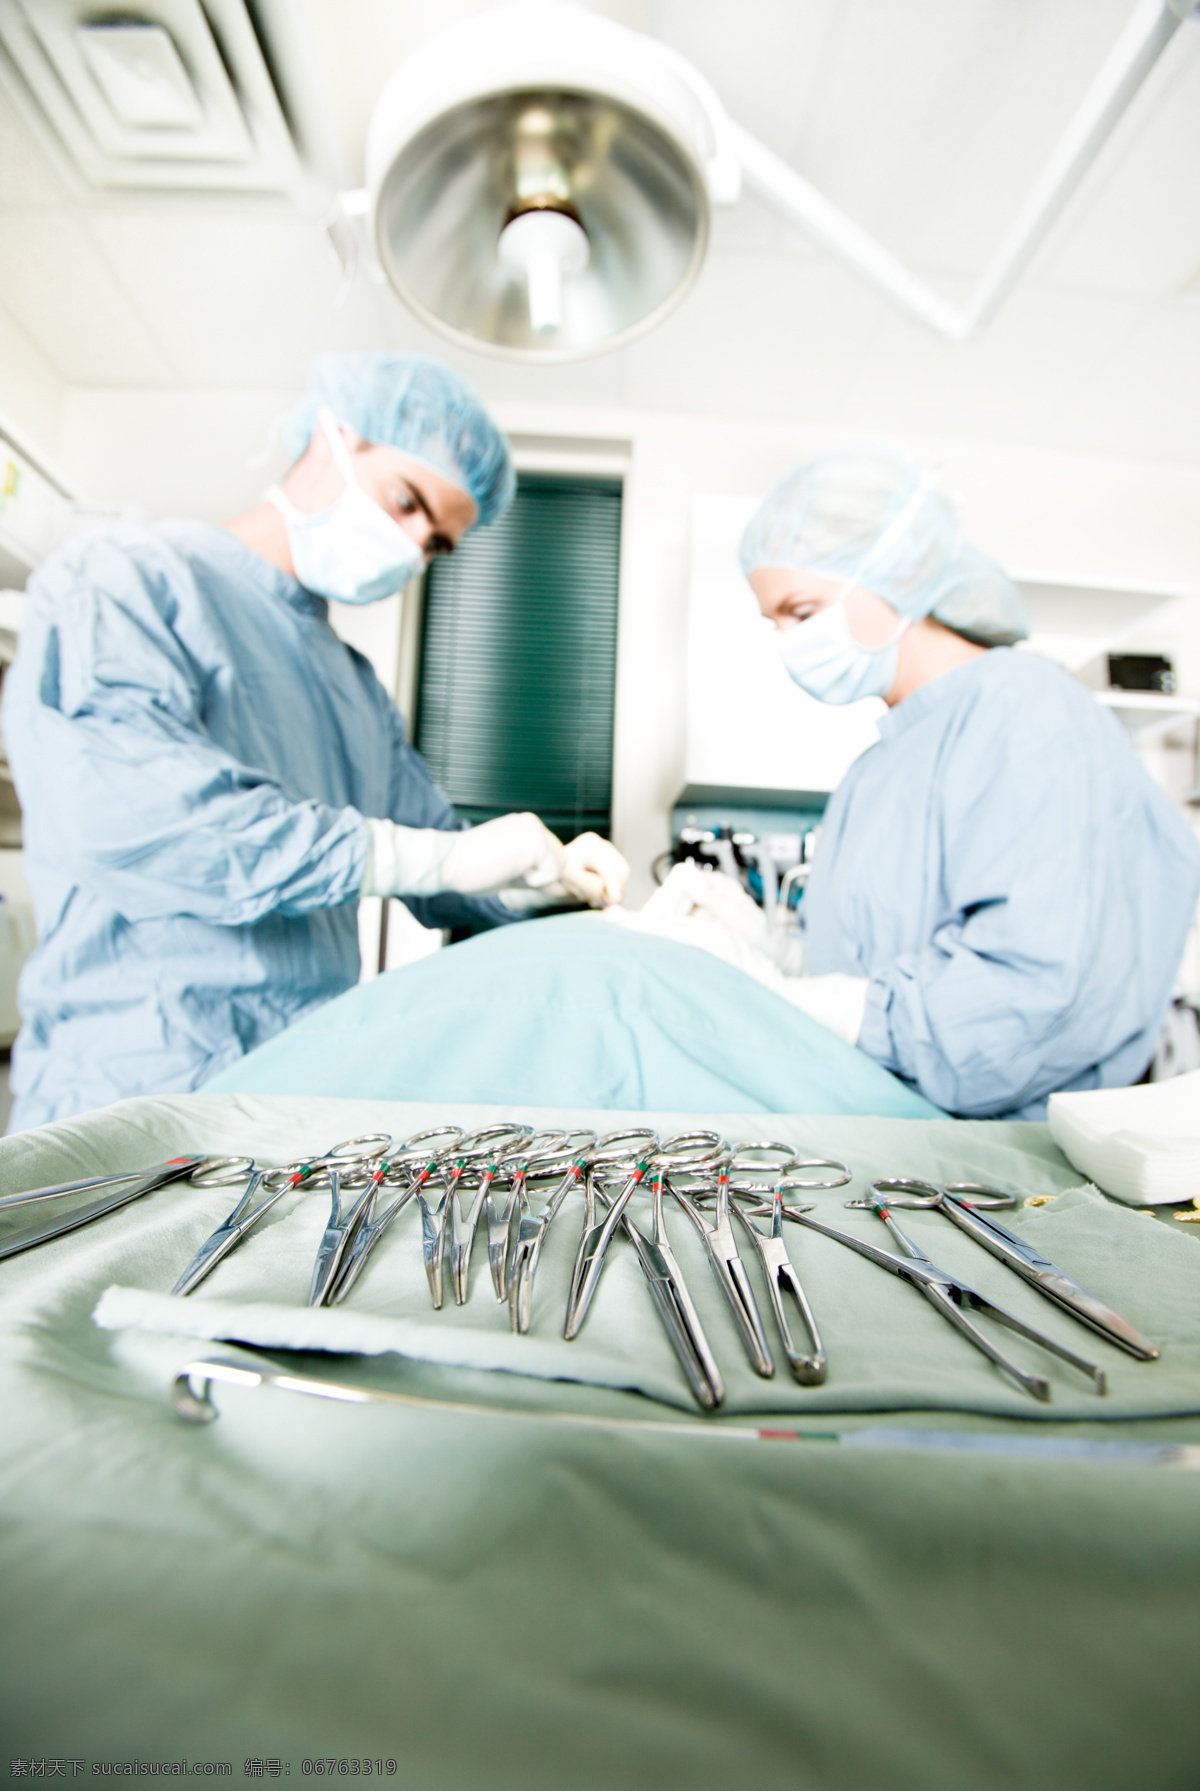 做 手术 医生 手术刀 手术团队 医务人员 医疗设备 手术室 医疗护理 现代科技